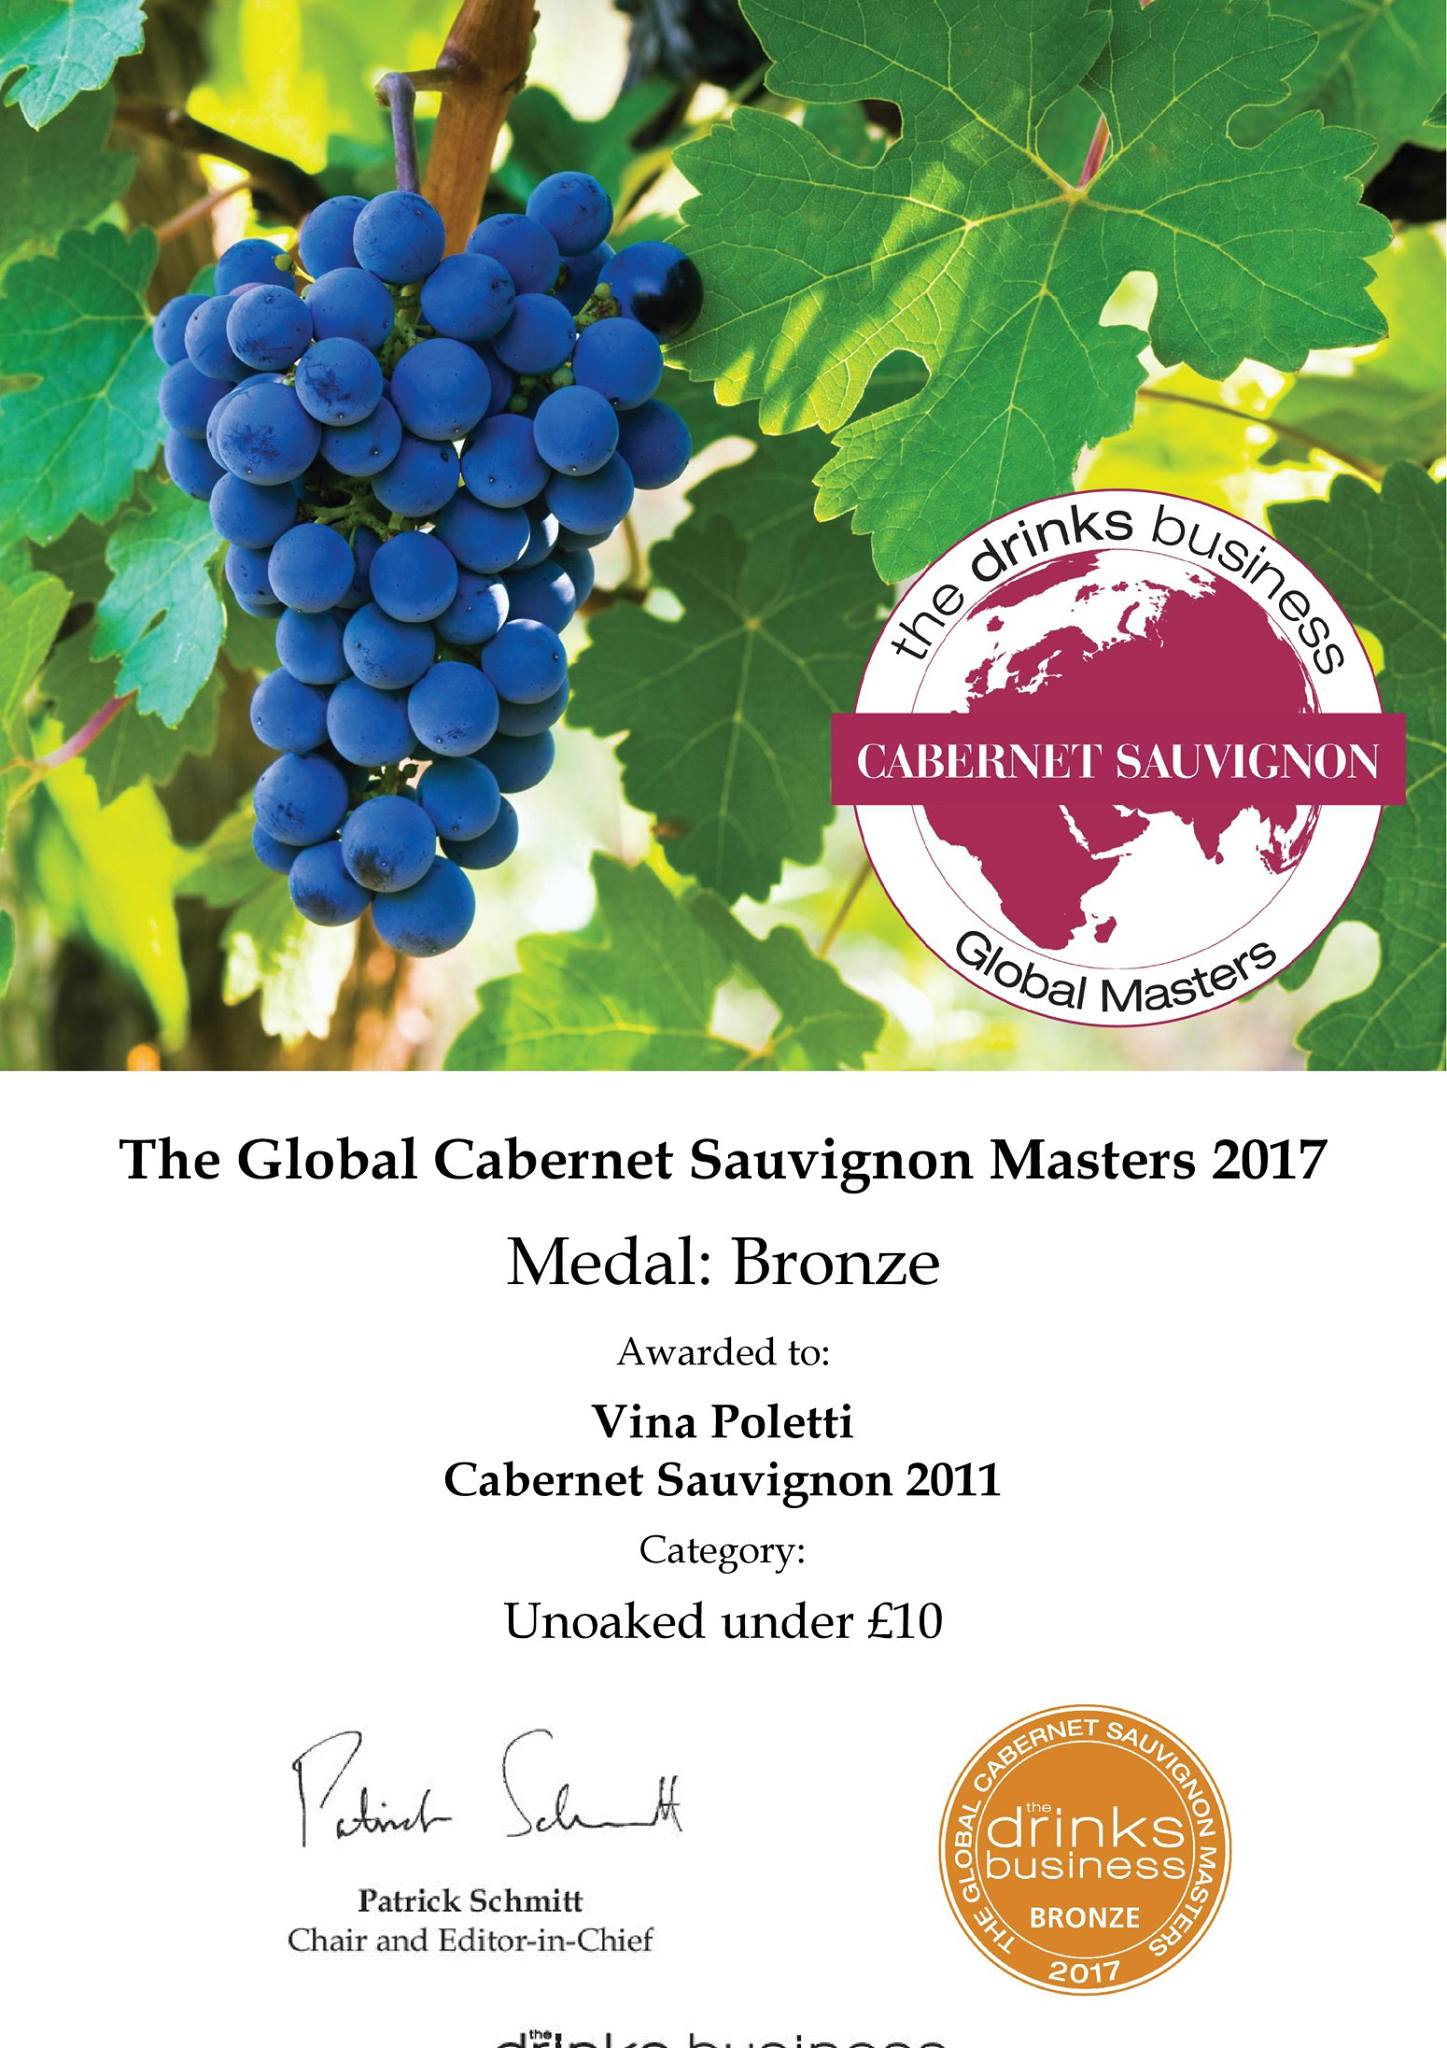 Brončana medalja s londonskog  ocjenjivanja The Global Cabernet Sauvignon Masters